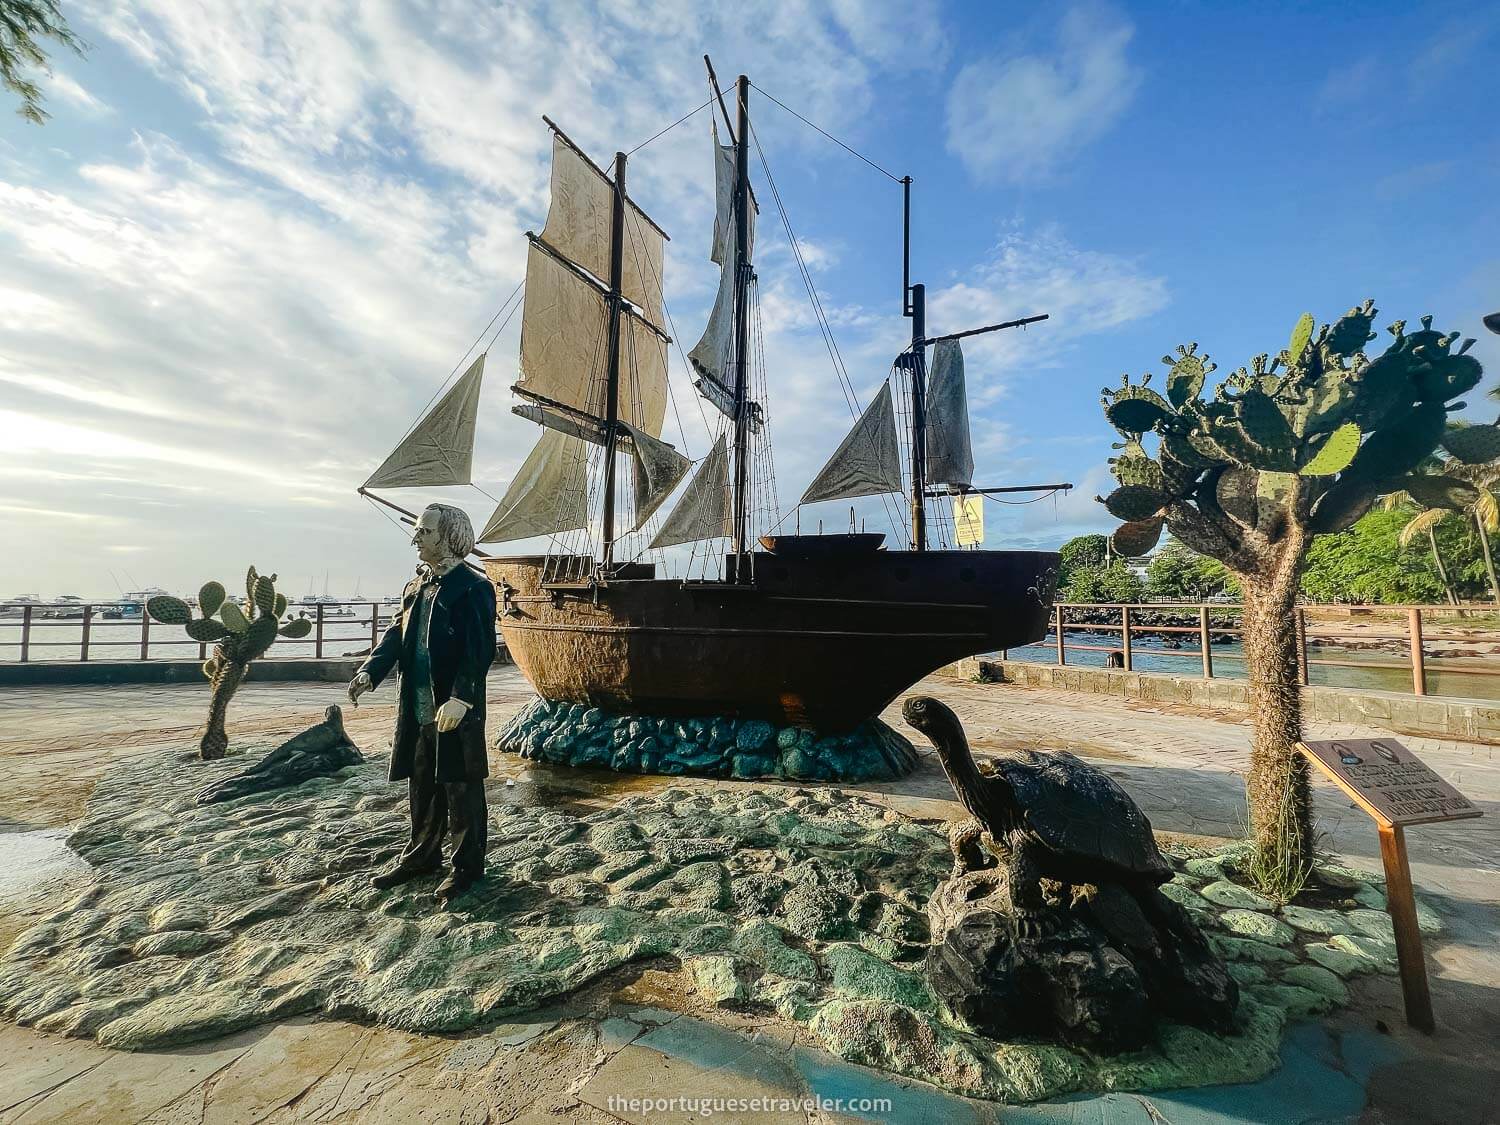 Darwin's statue in Puerto Baquerizo Moreno